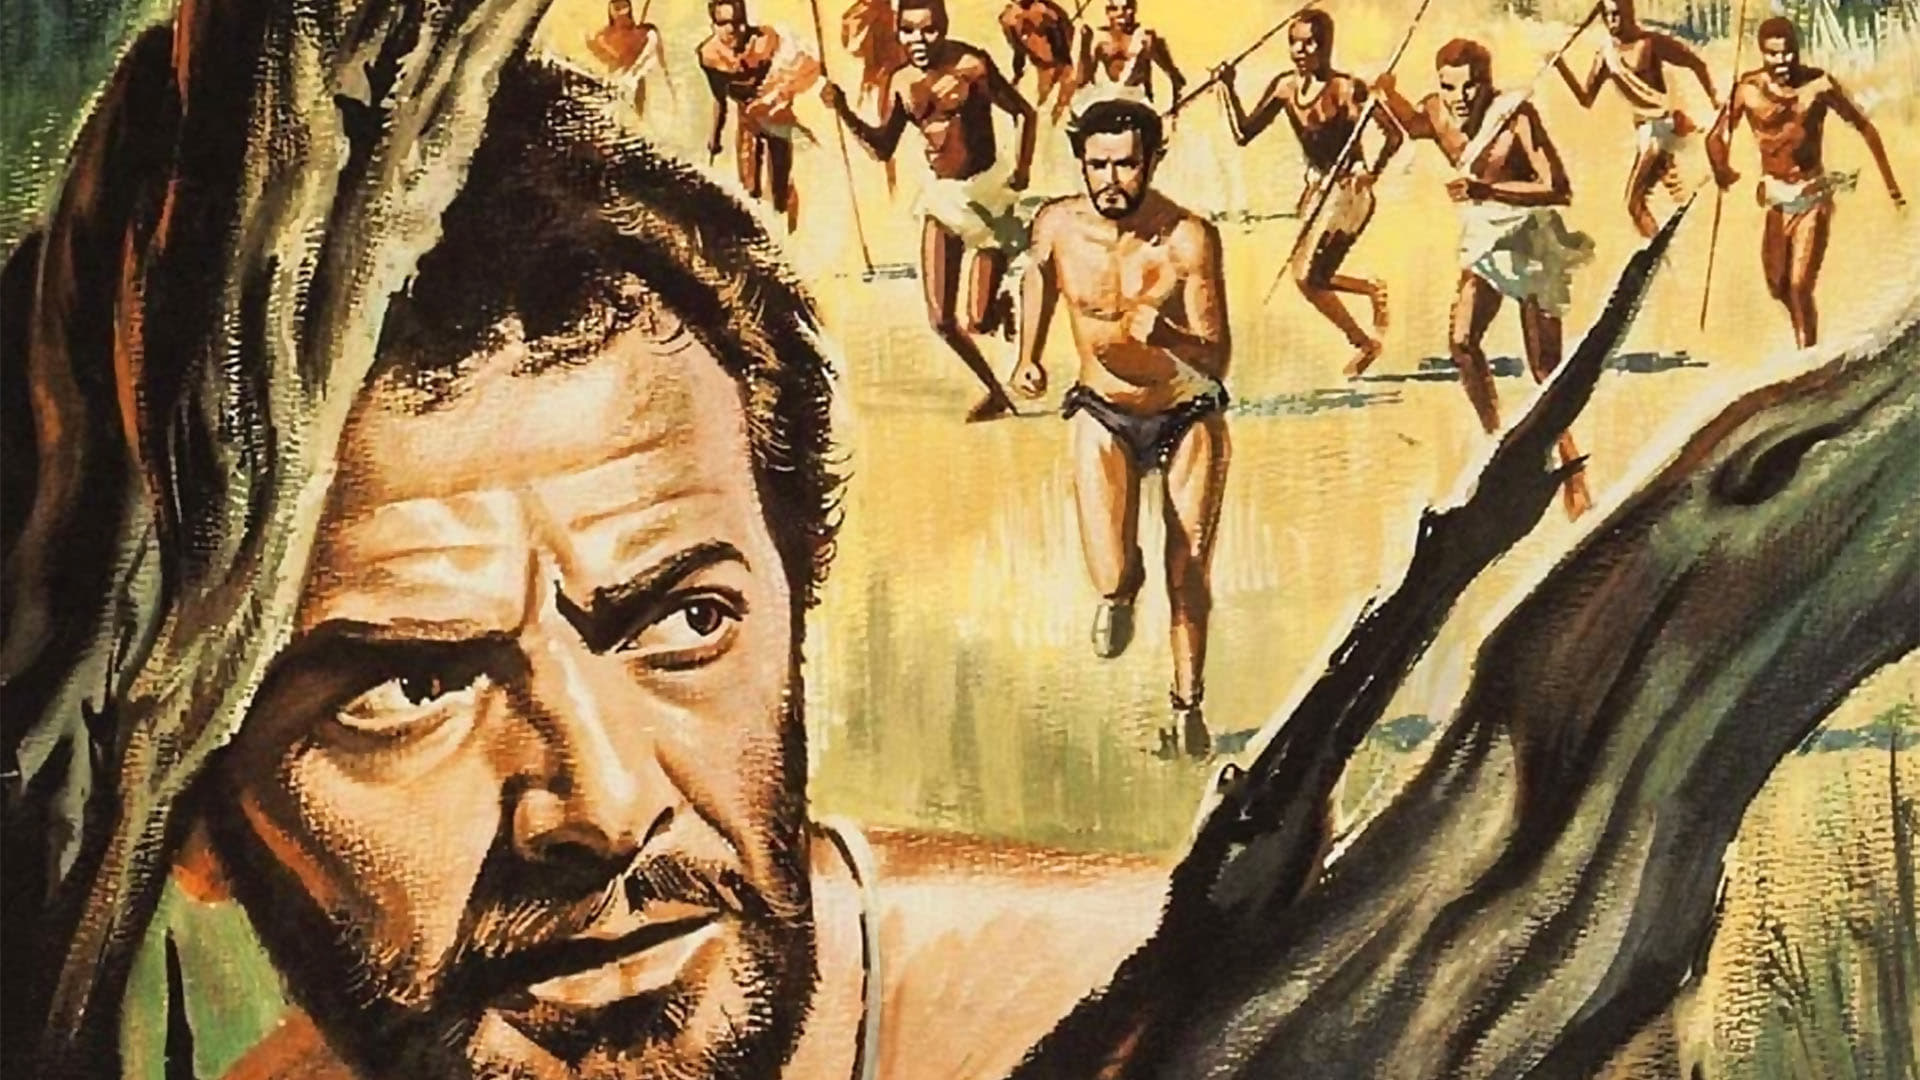 La presa desnuda (1965)